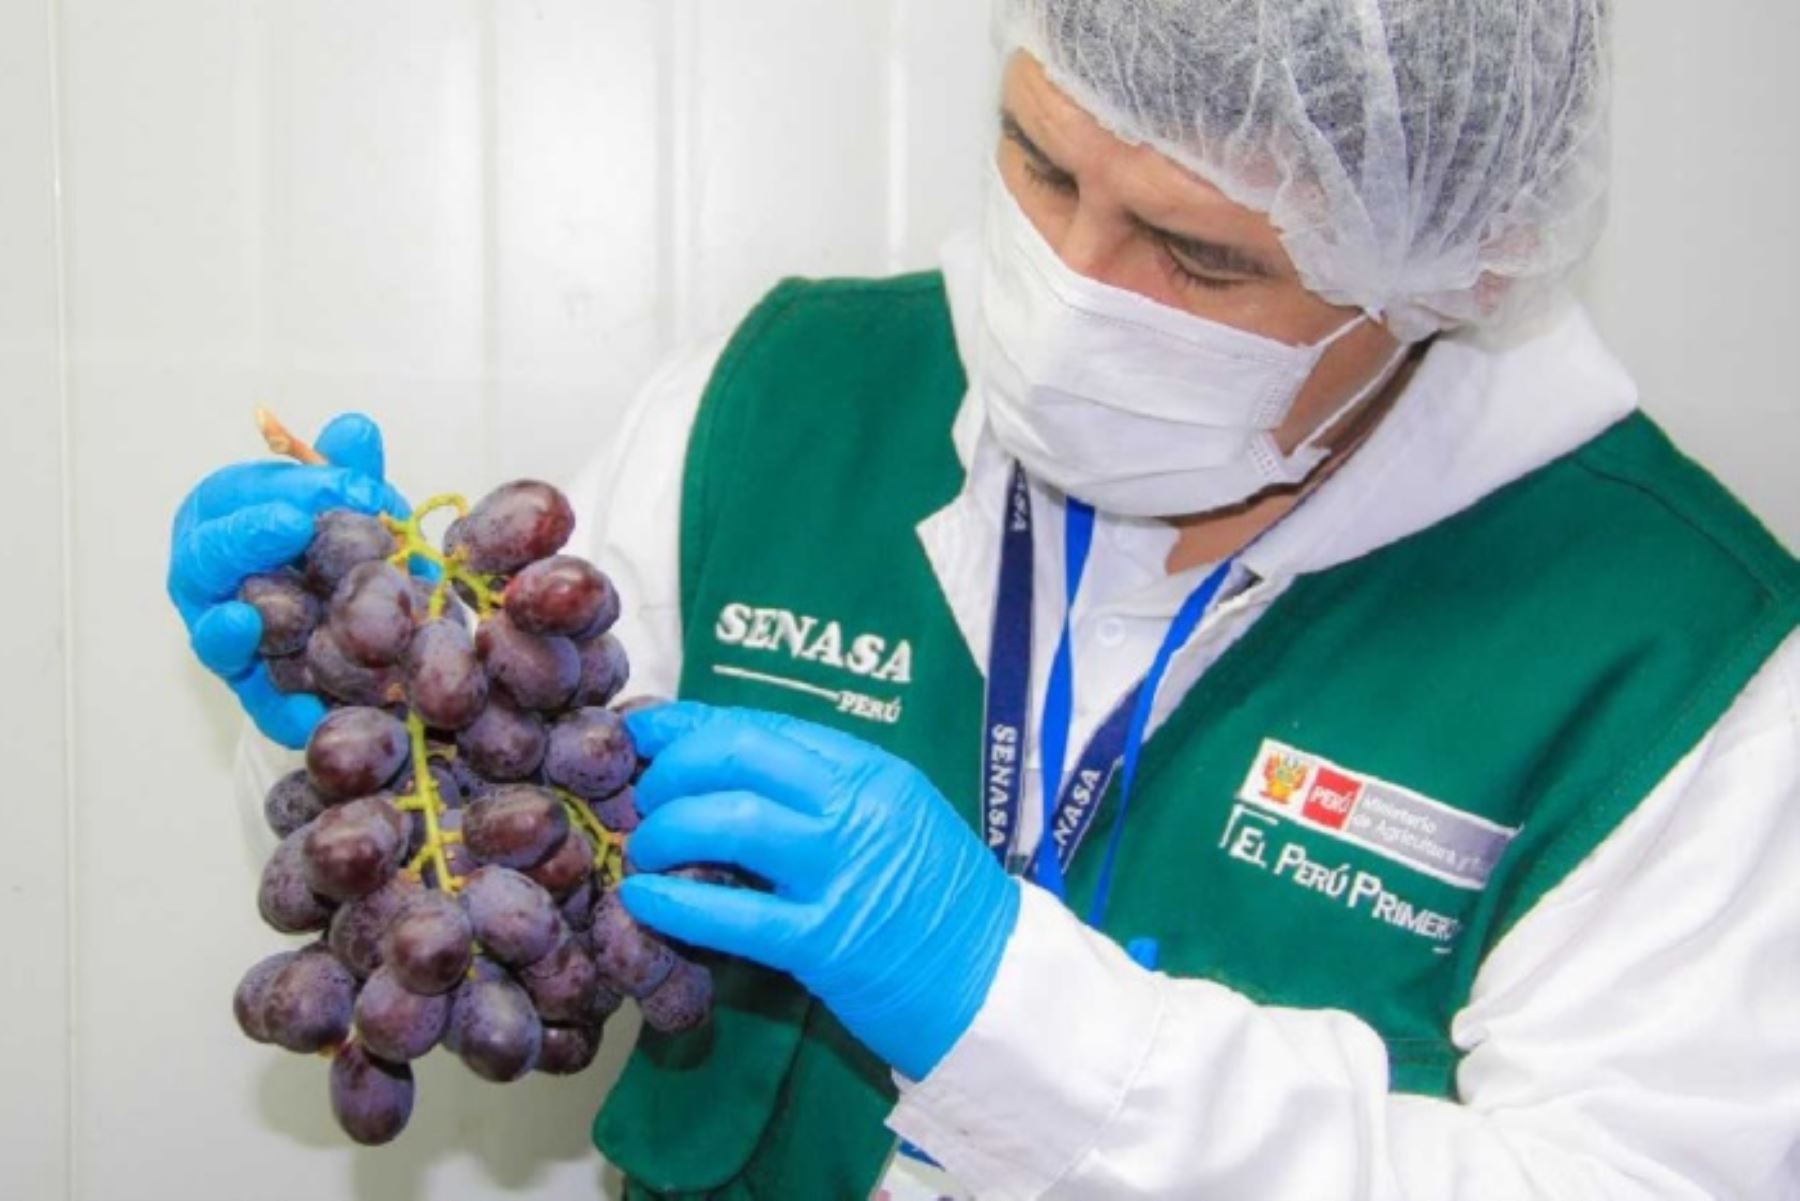 Especialistas del Servicio Nacional de Sanidad Agraria (Senasa) trabajan en la certificación del lugar de producción, planta de empaque, así como la inspección del envío programado y el tratamiento de la uva que se alista a ser exportada desde las provincias de la zona costa de Áncash.